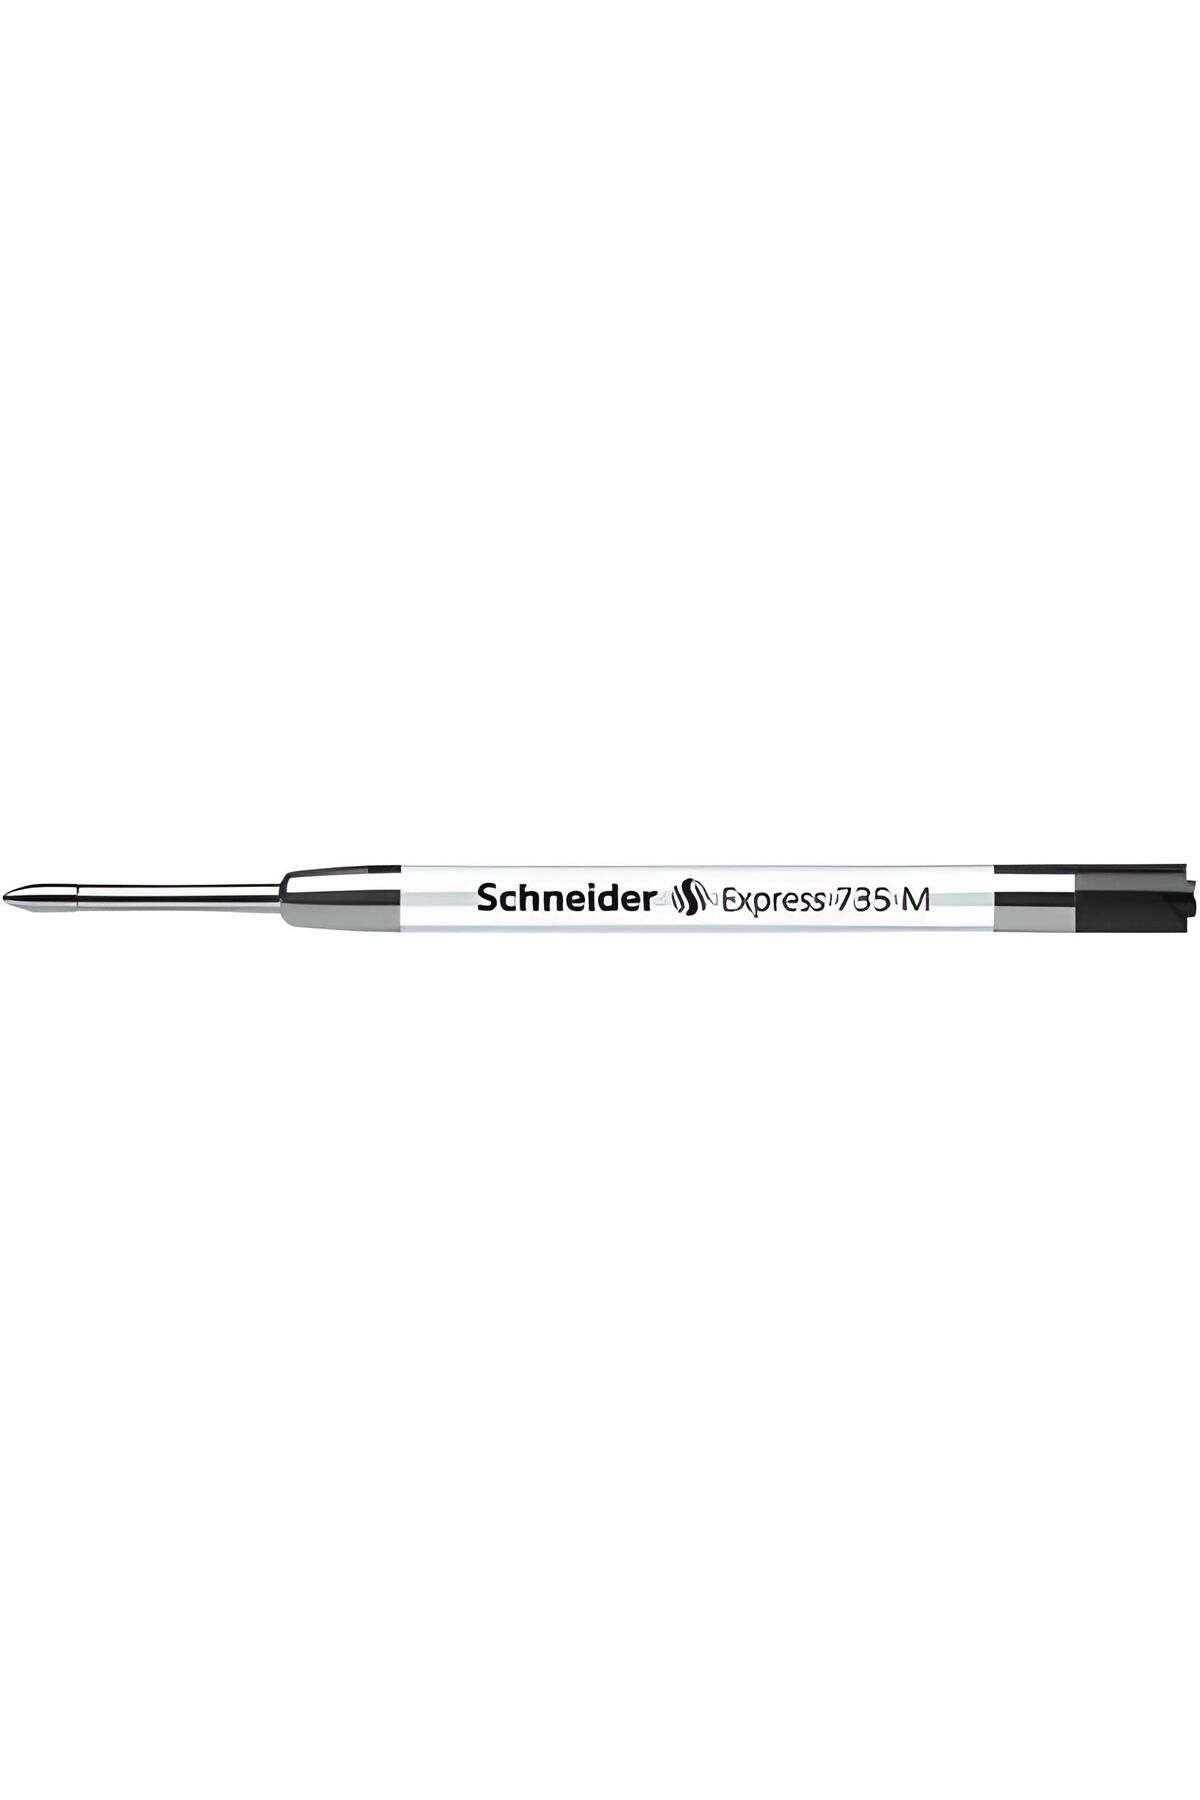 Schneider EXPRESS 735 M PARKER TİPİ TÜKENMEZ KALEM YEDEĞİ SİYAH